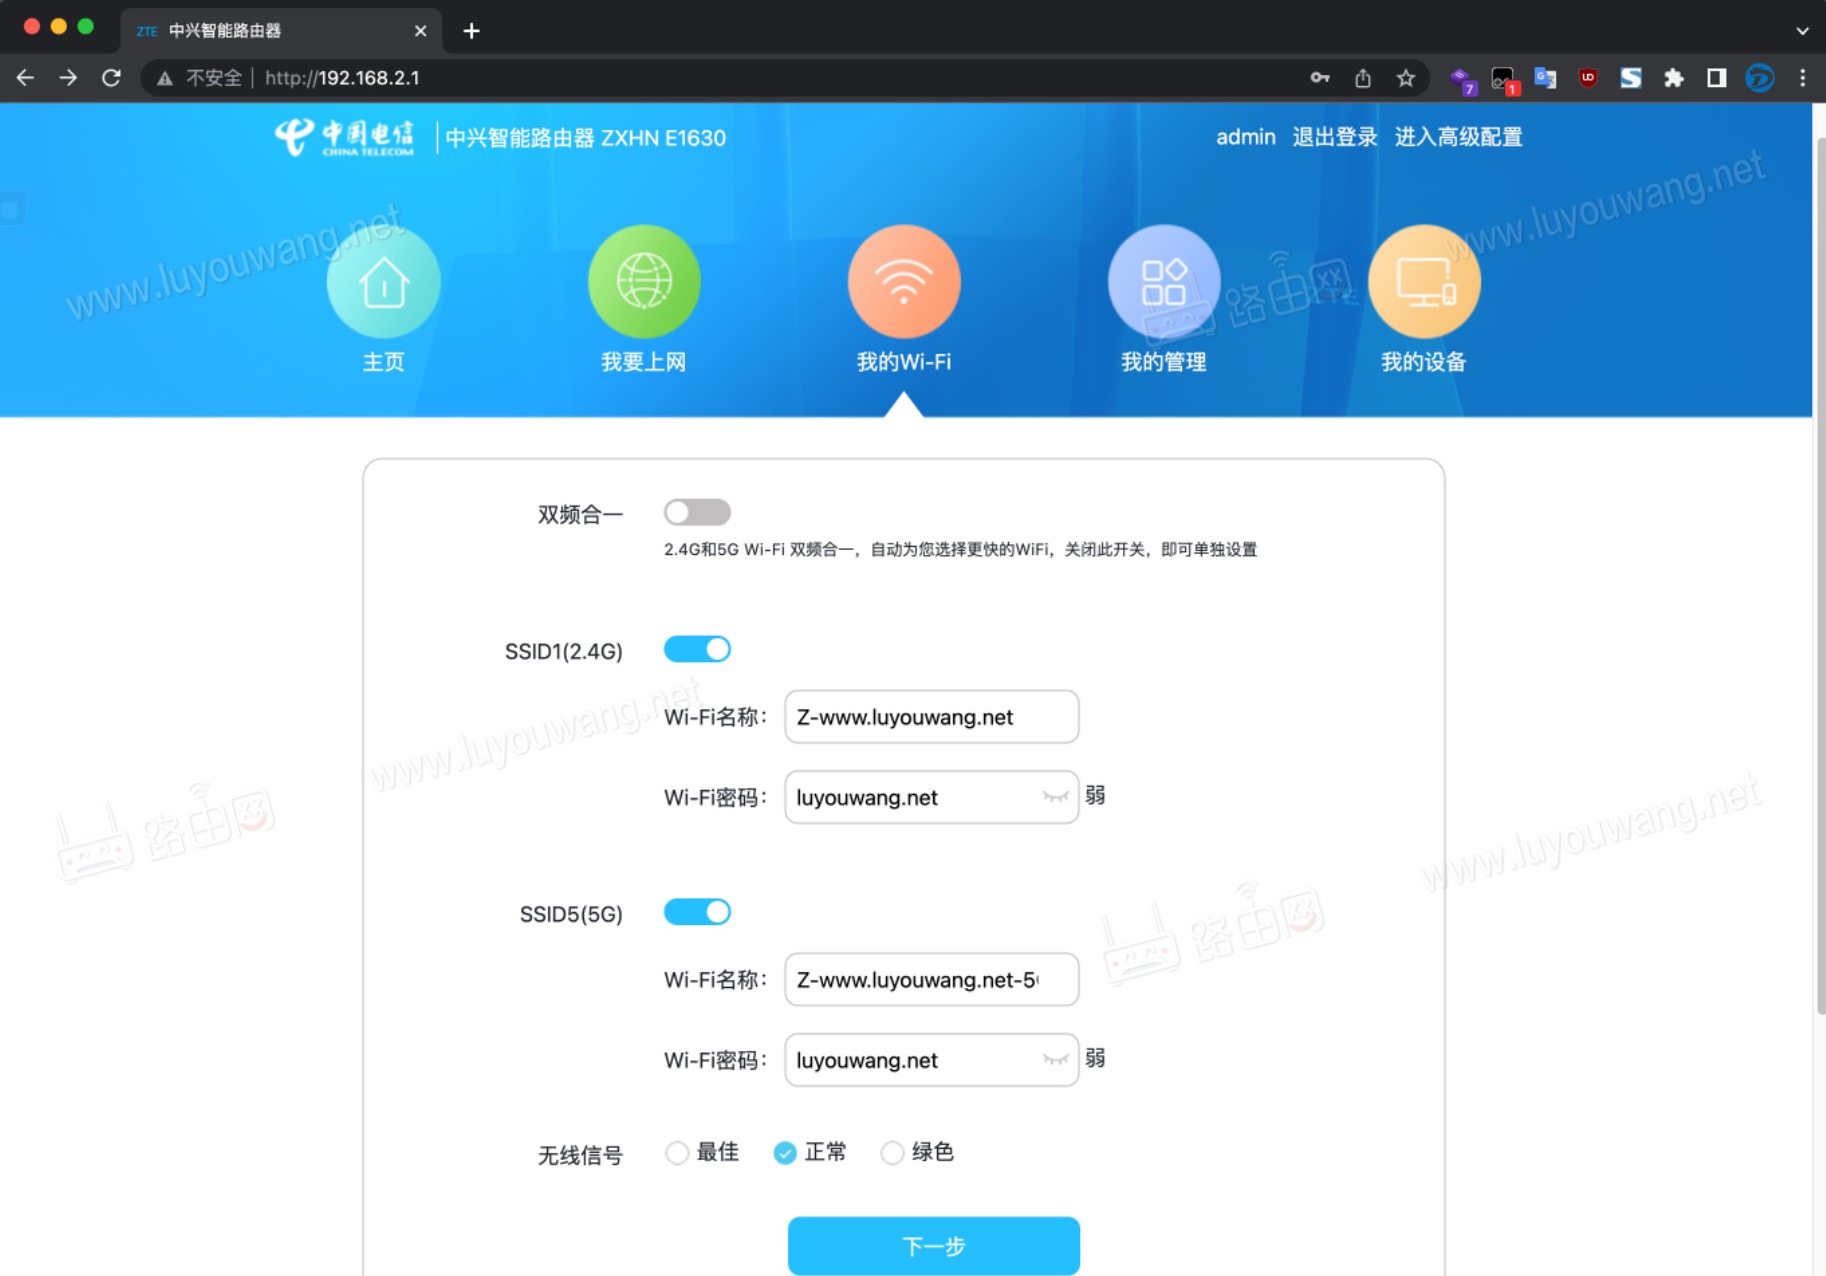 中国电信路由器192.168.2.1登录设置上网教程